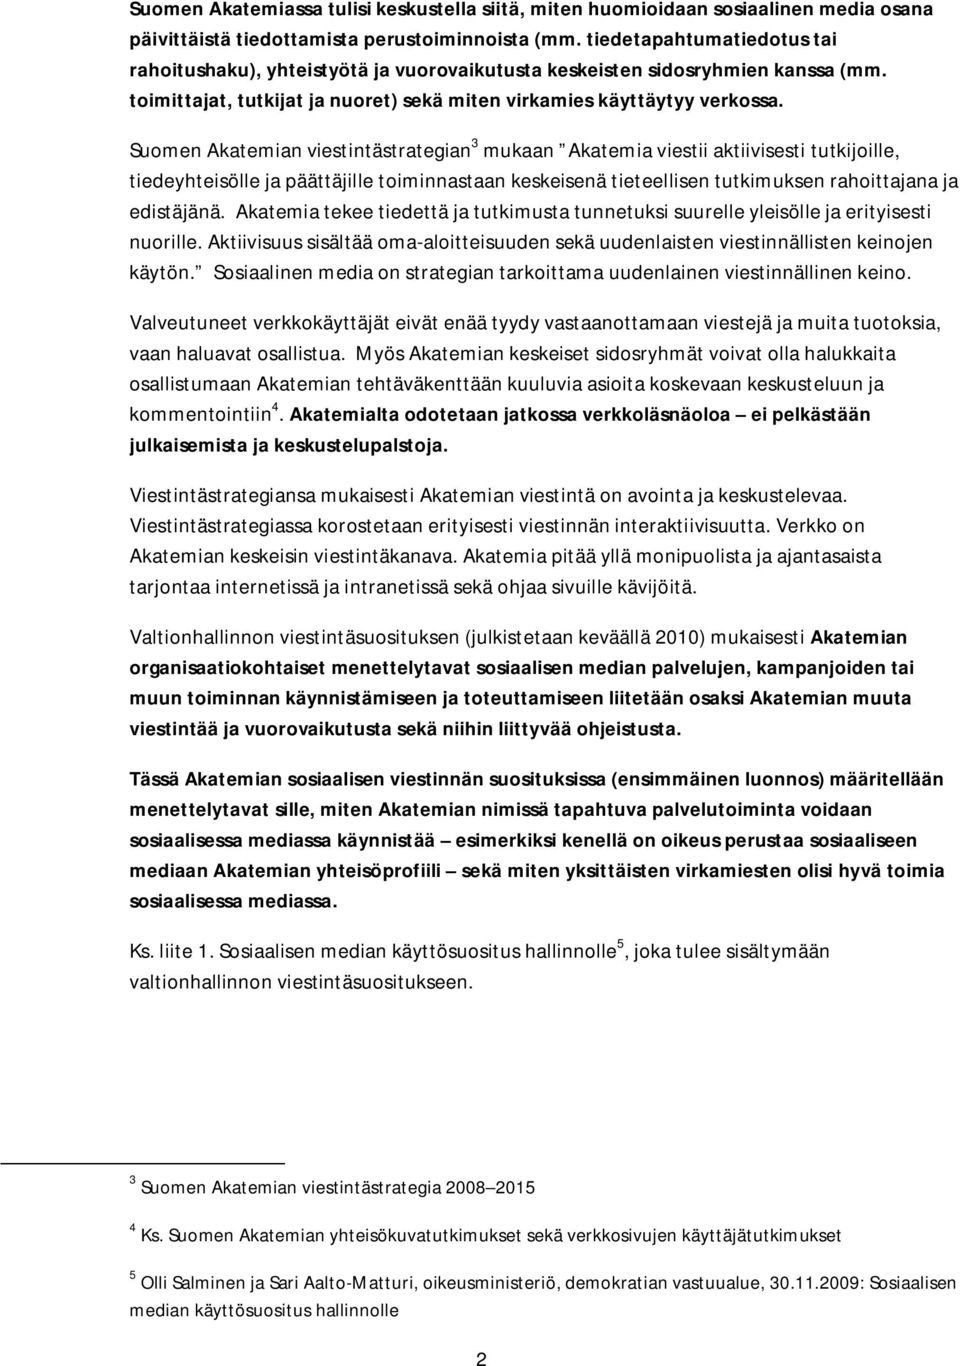 Suomen Akatemian viestintästrategian 3 mukaan Akatemia viestii aktiivisesti tutkijoille, tiedeyhteisölle ja päättäjille toiminnastaan keskeisenä tieteellisen tutkimuksen rahoittajana ja edistäjänä.